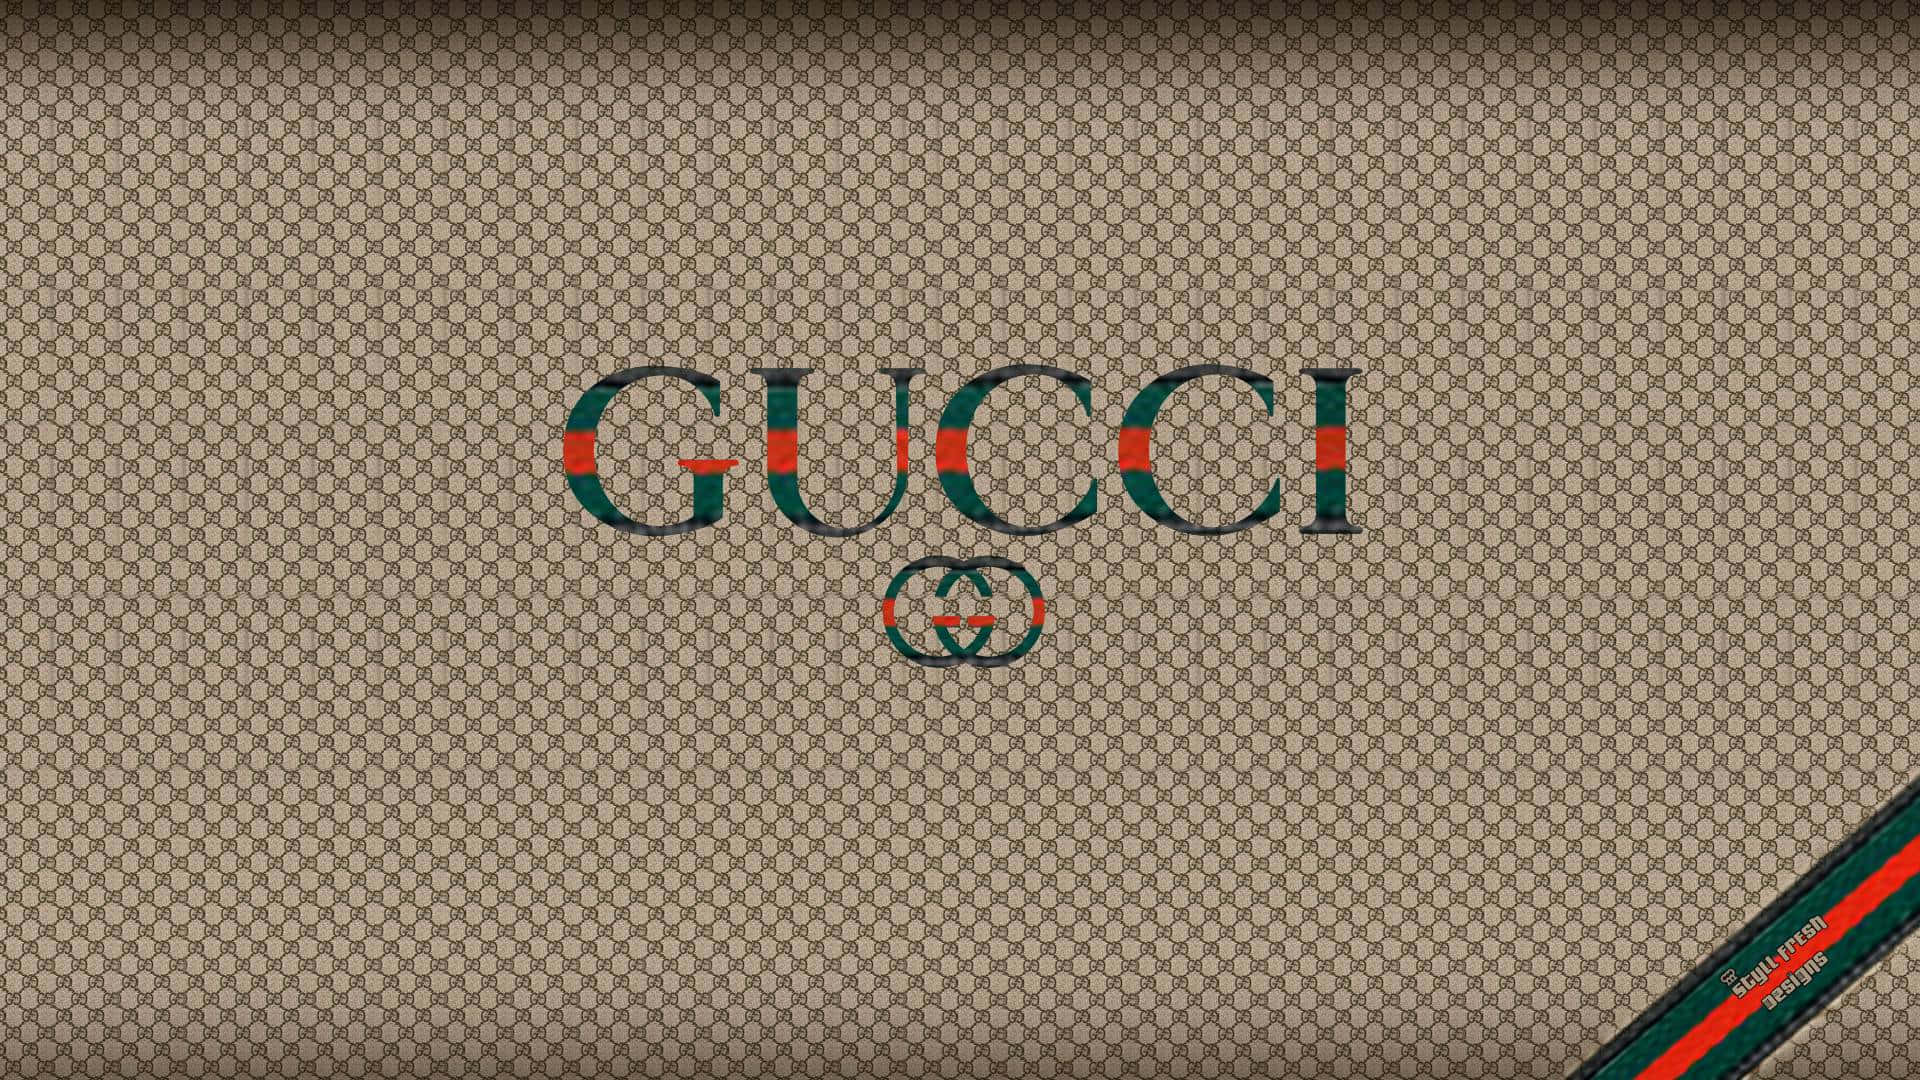 Ansprechendergrüner Und Orangefarbener Hintergrund Mit Gucci-logo.